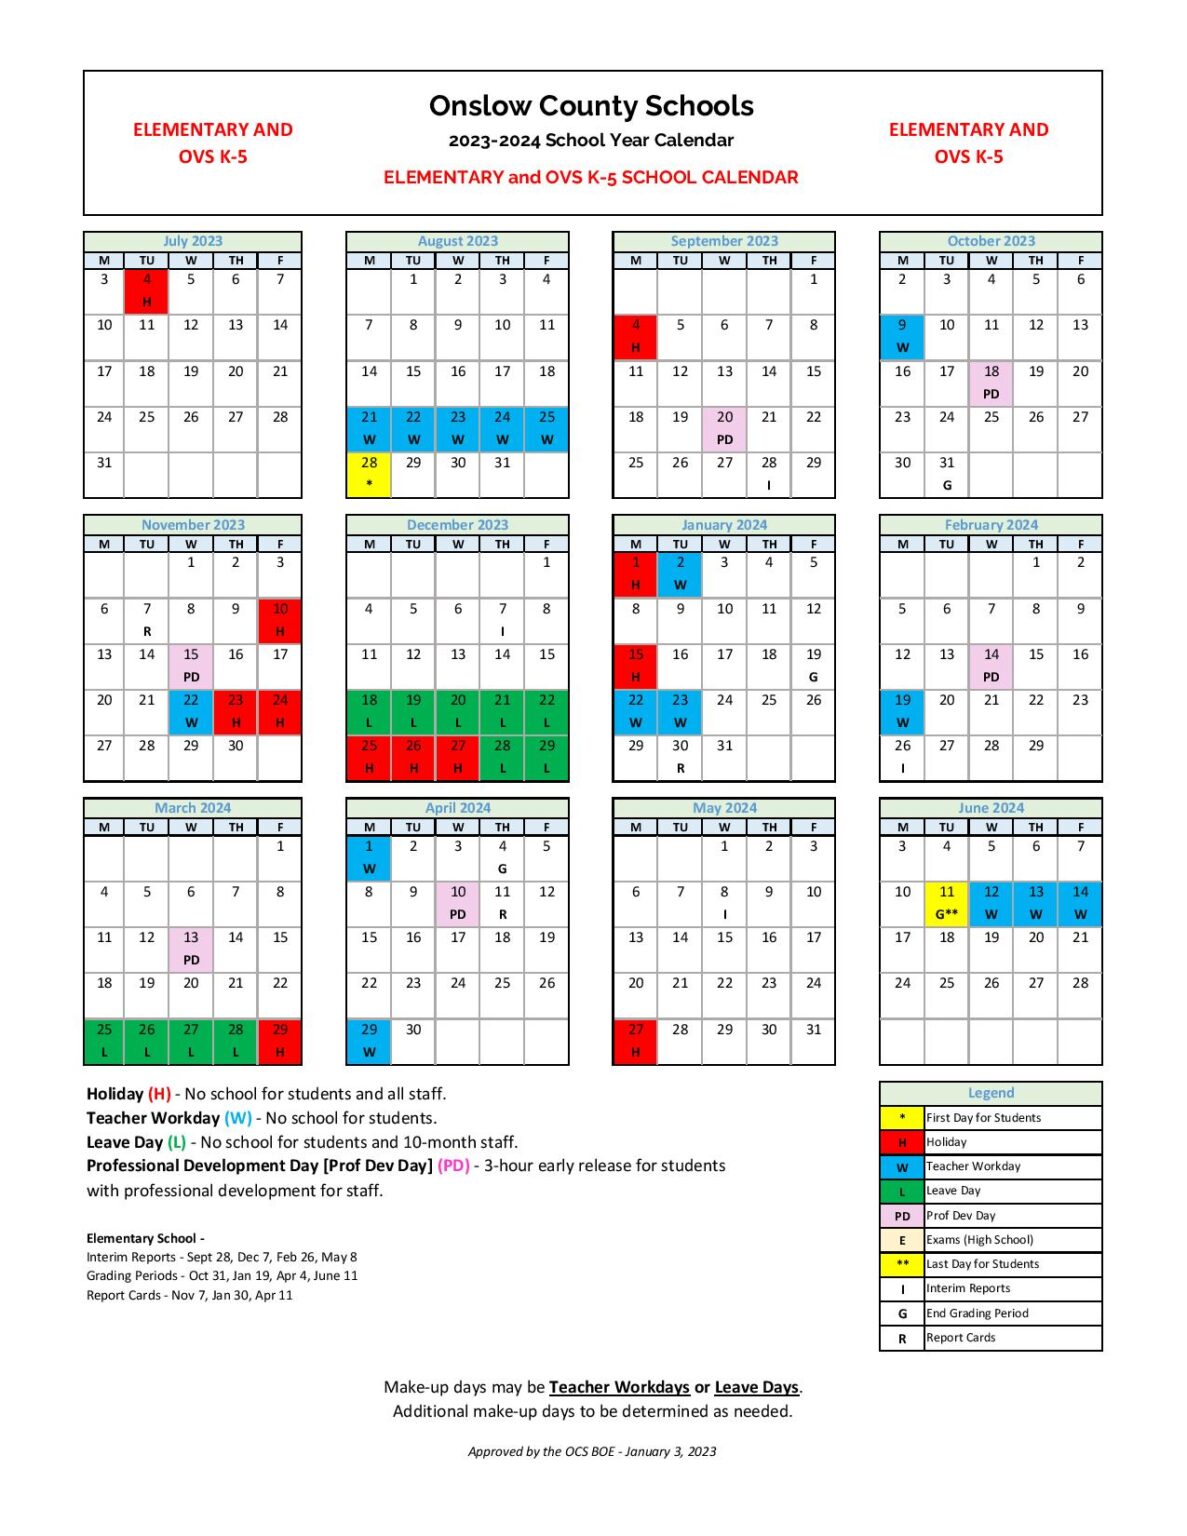 Cusd 2023 2024 School Calendar Image to u